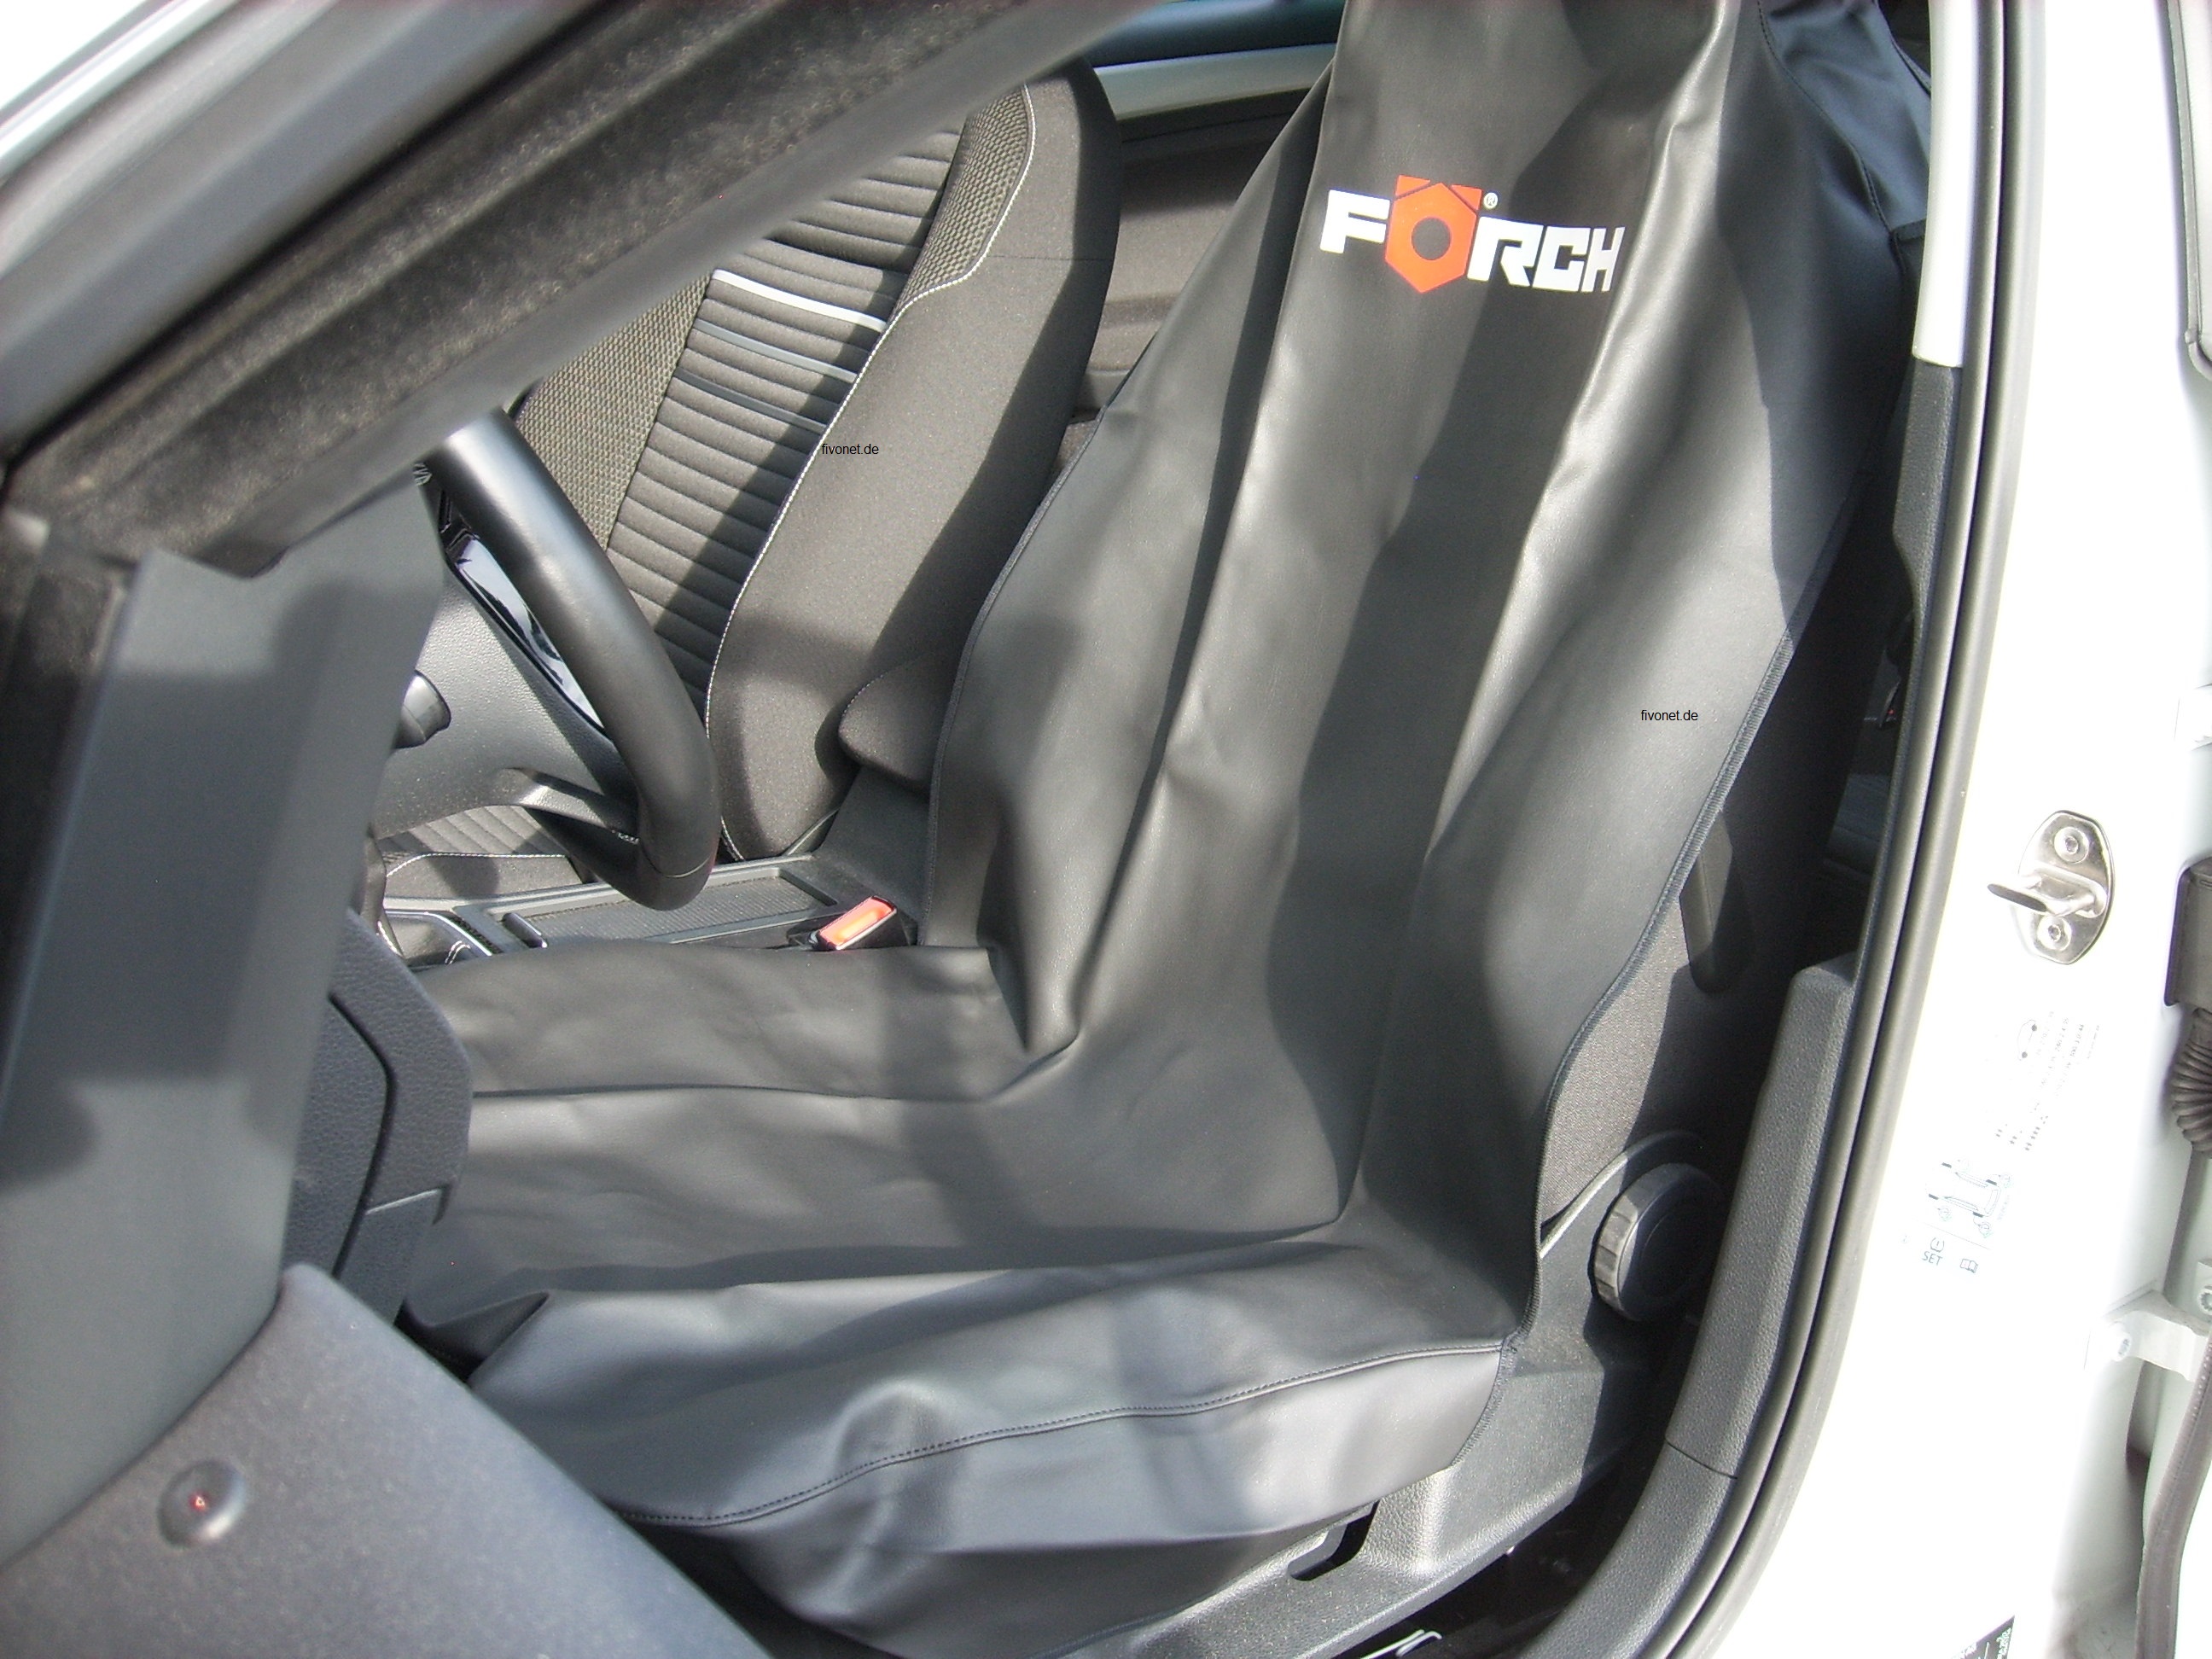 Förch Sitzschoner Kunstleder schwarz mit Airbag Zulassung Werkstattschoner Sitzbezug